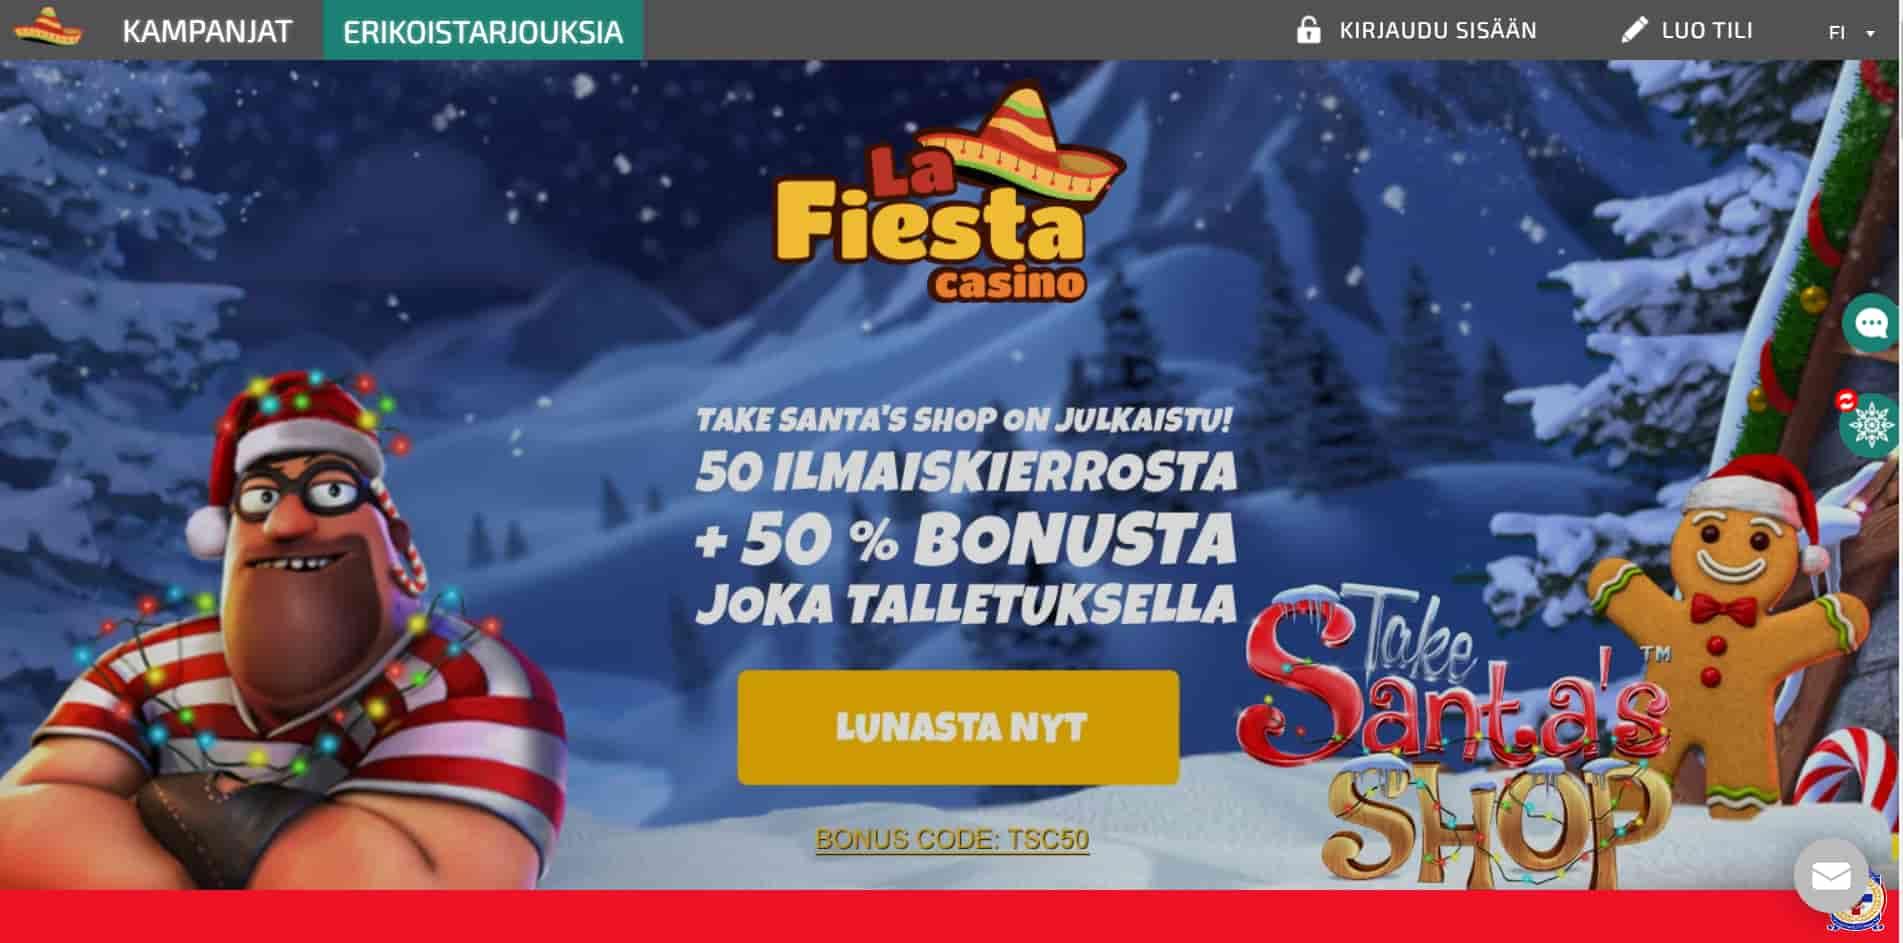 La Fiesta casino homepage